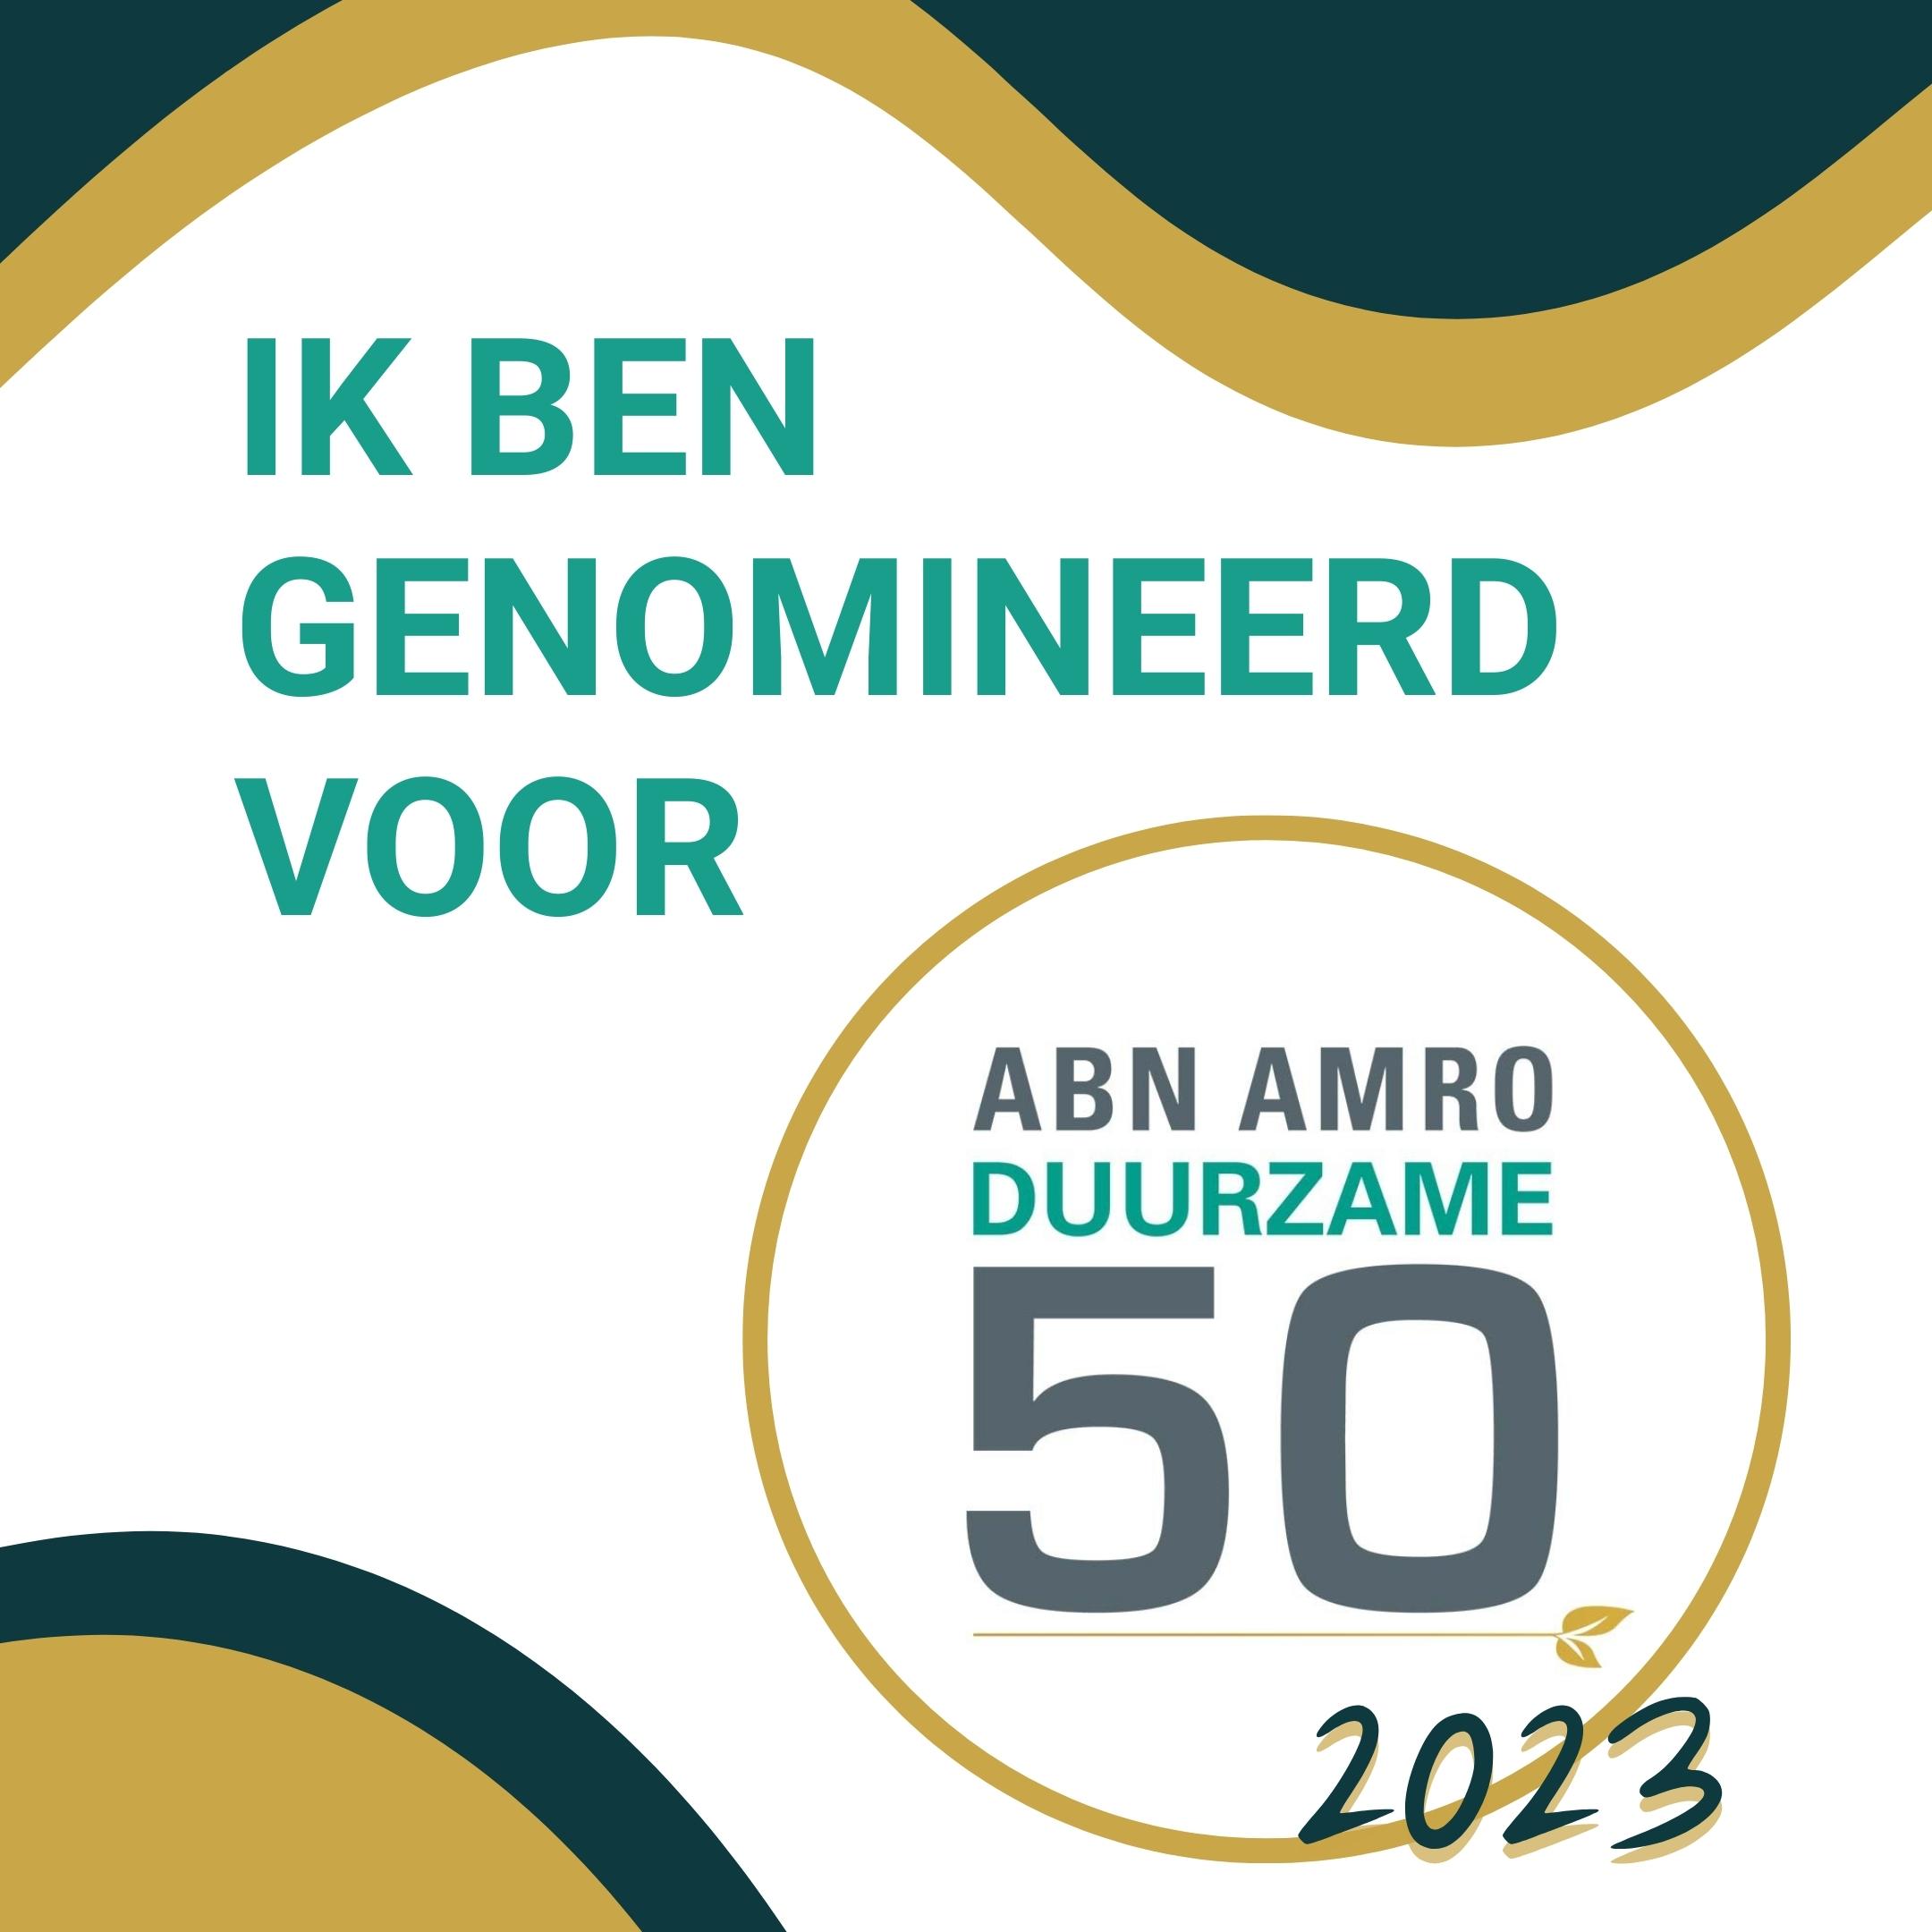 Jack van der Palen is genomineerd voor de duurzame 50